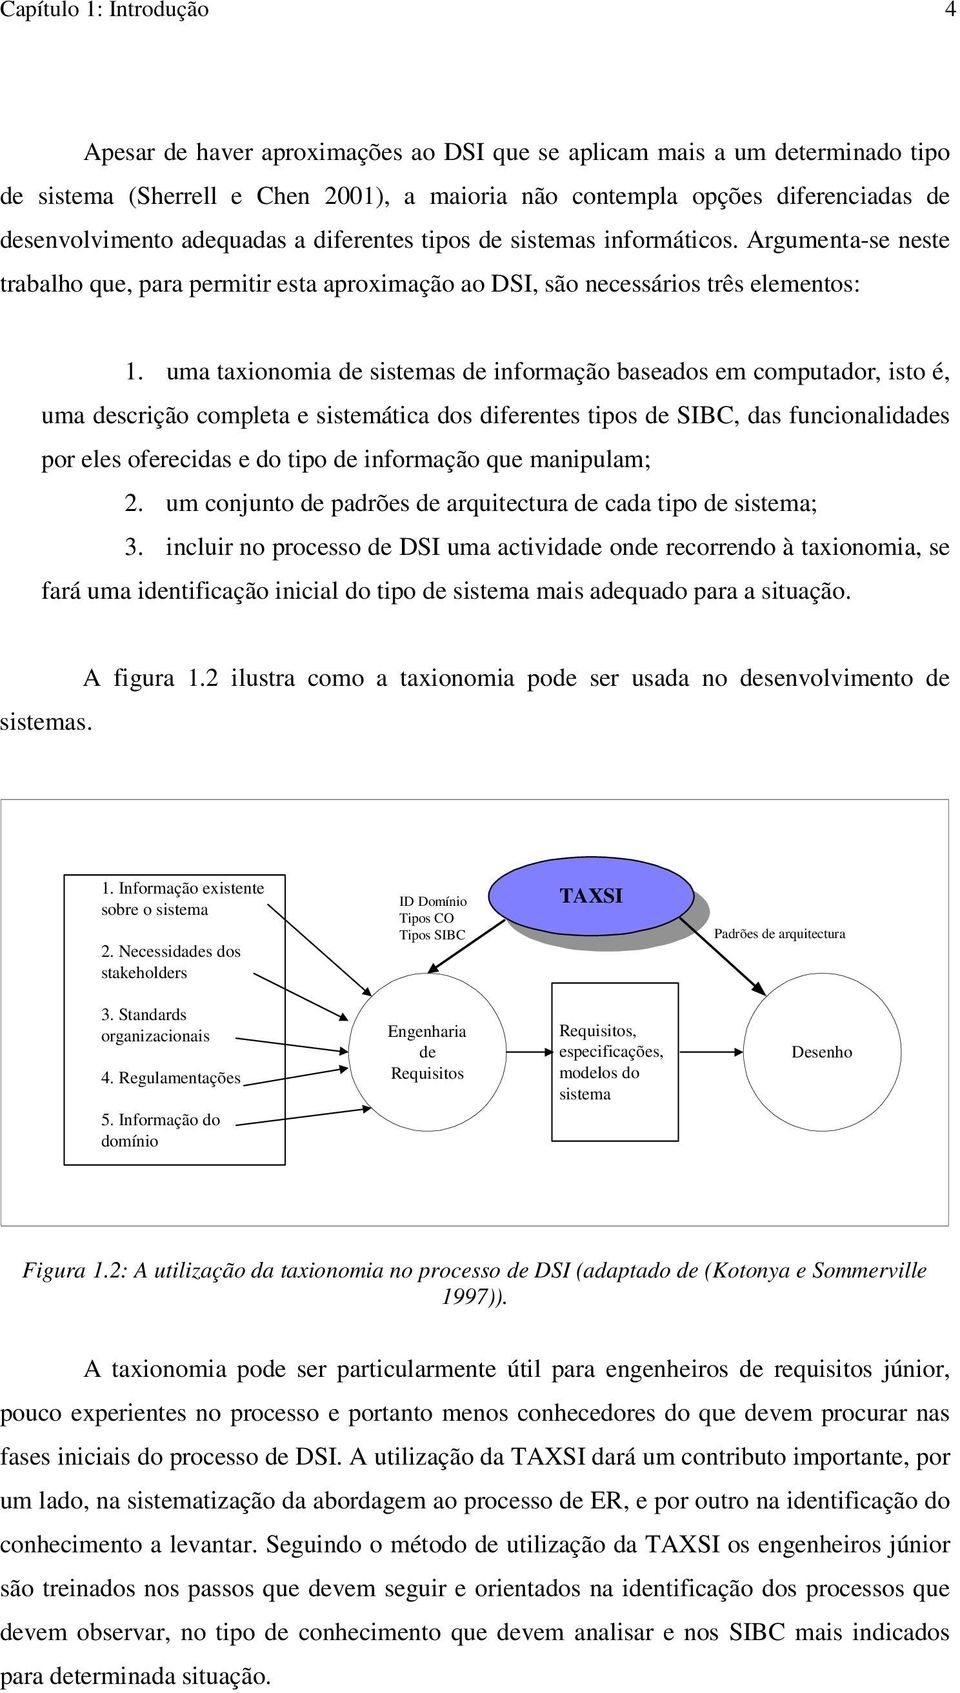 uma taxionomia de sistemas de informação baseados em computador, isto é, uma descrição completa e sistemática dos diferentes tipos de SIBC, das funcionalidades por eles oferecidas e do tipo de